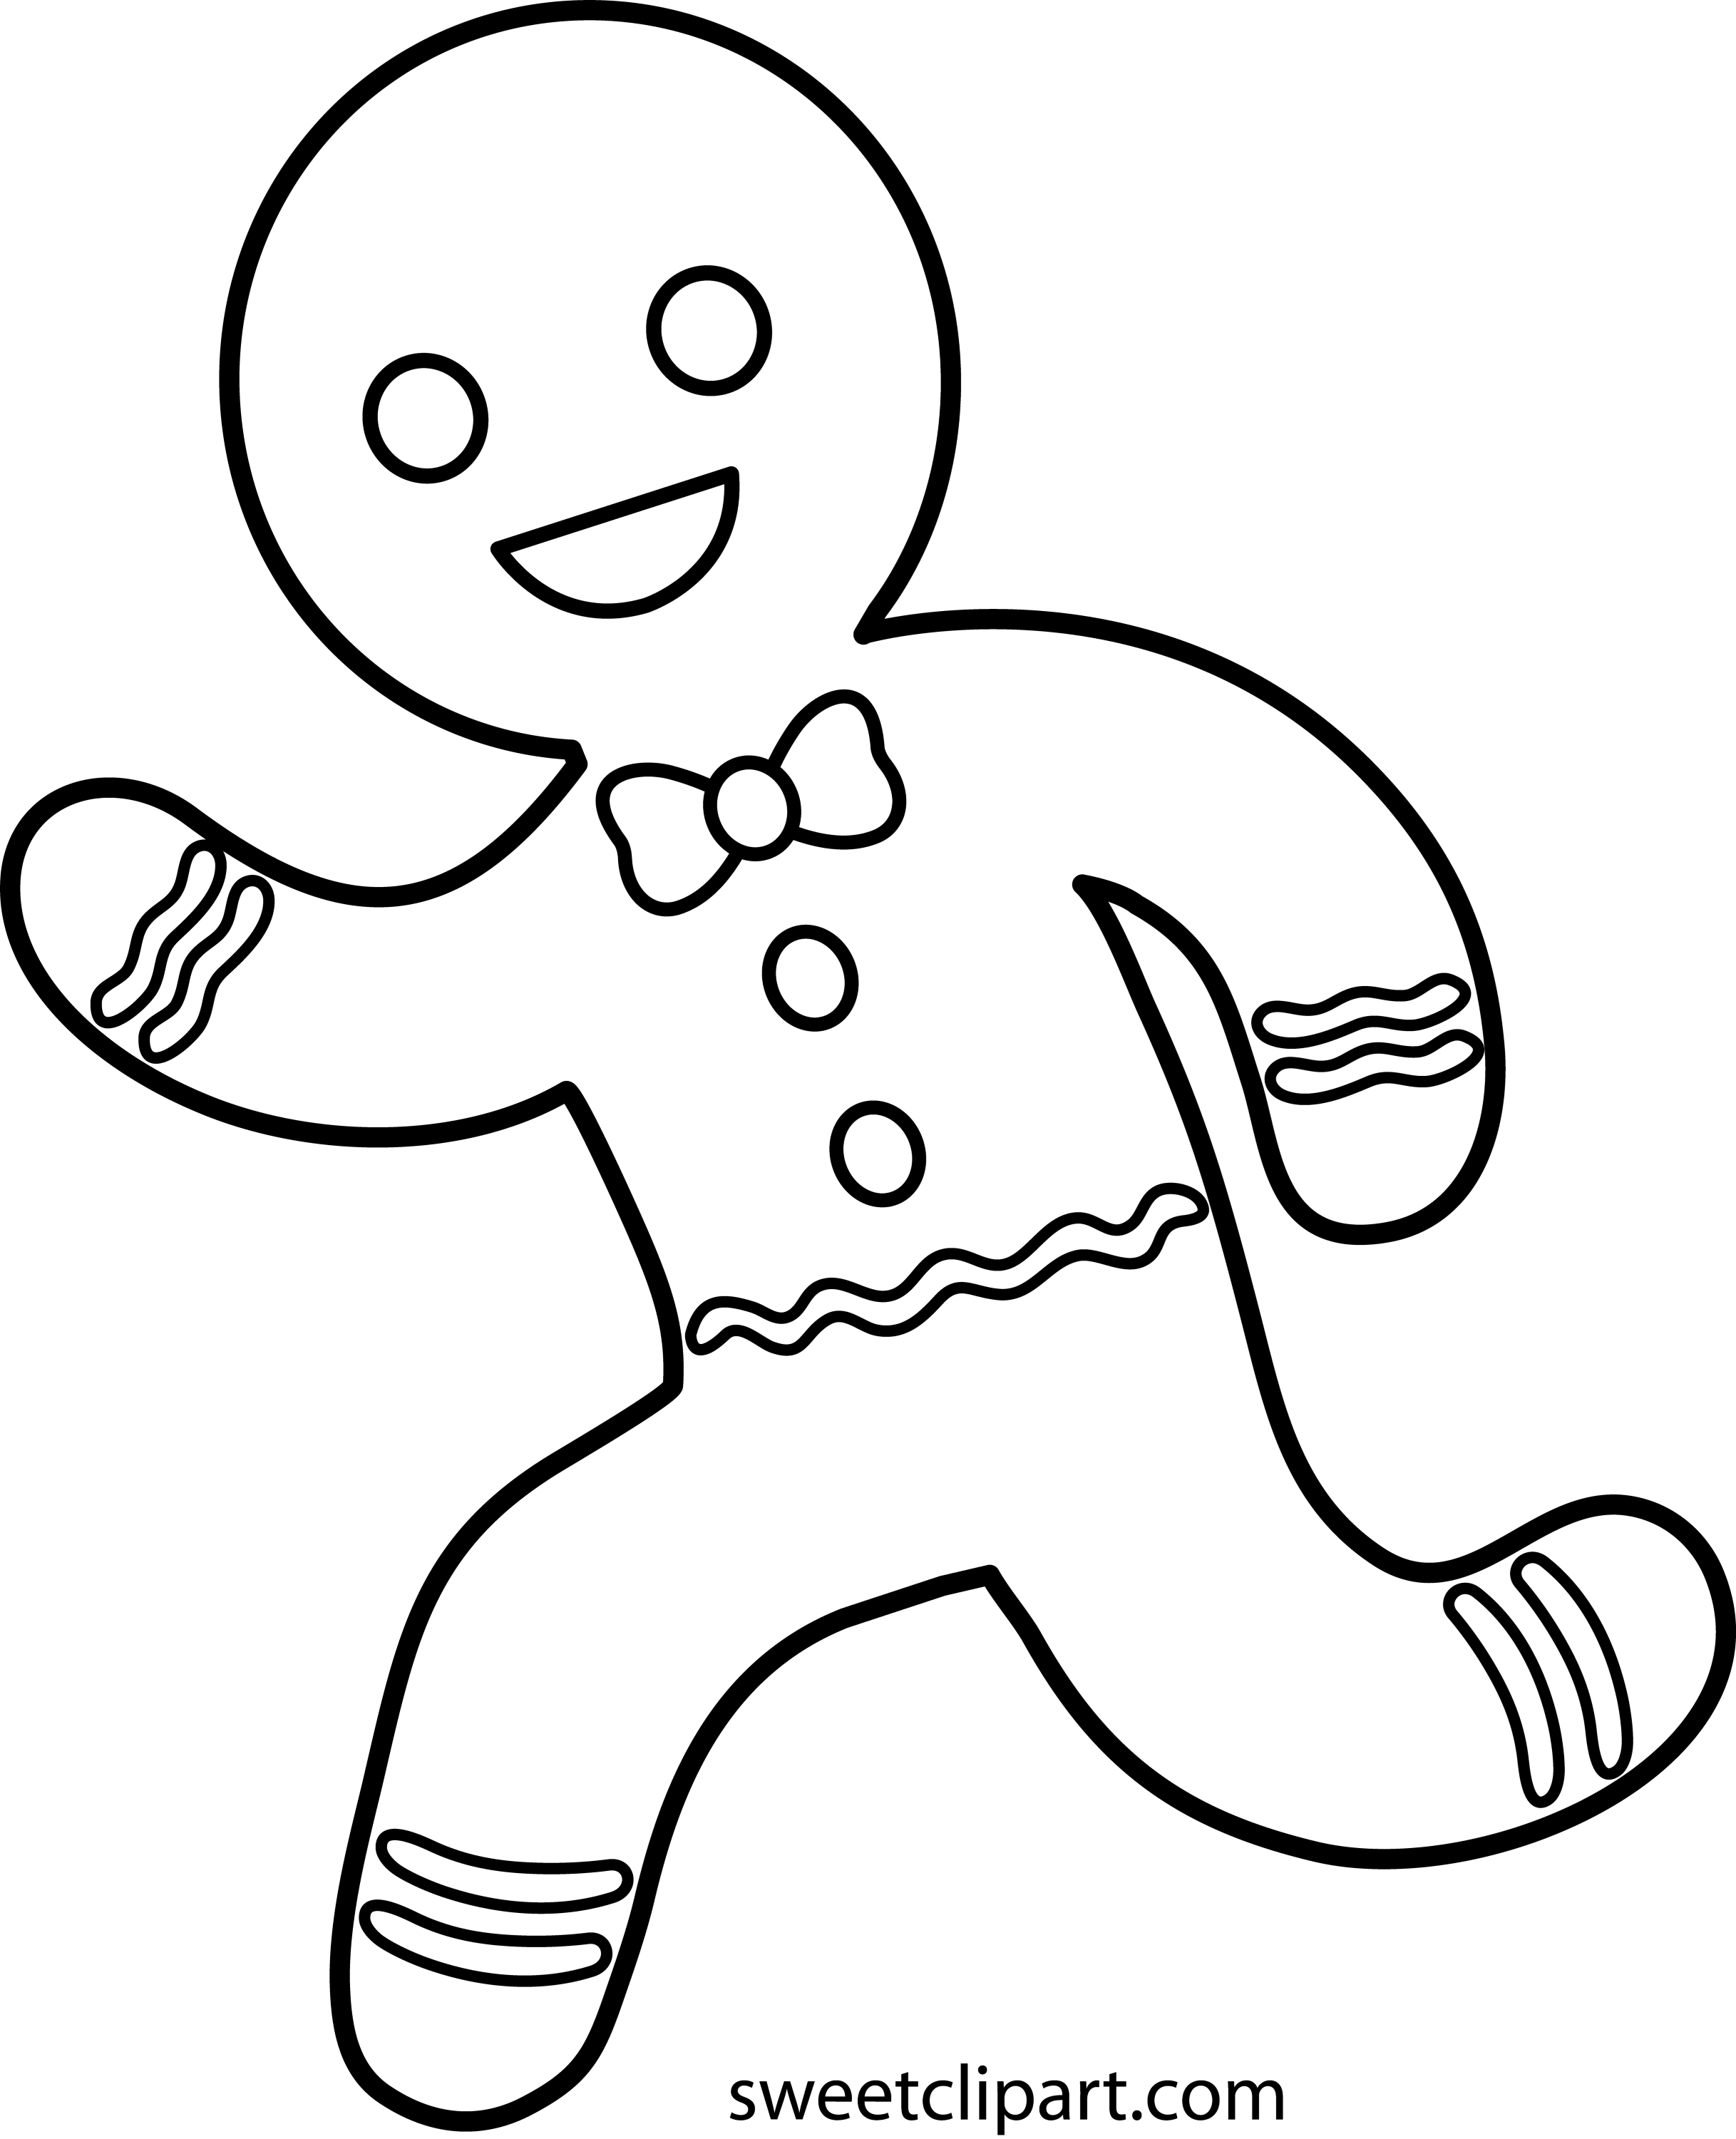 Running Gingerbread Man Line Art Free Clip Art